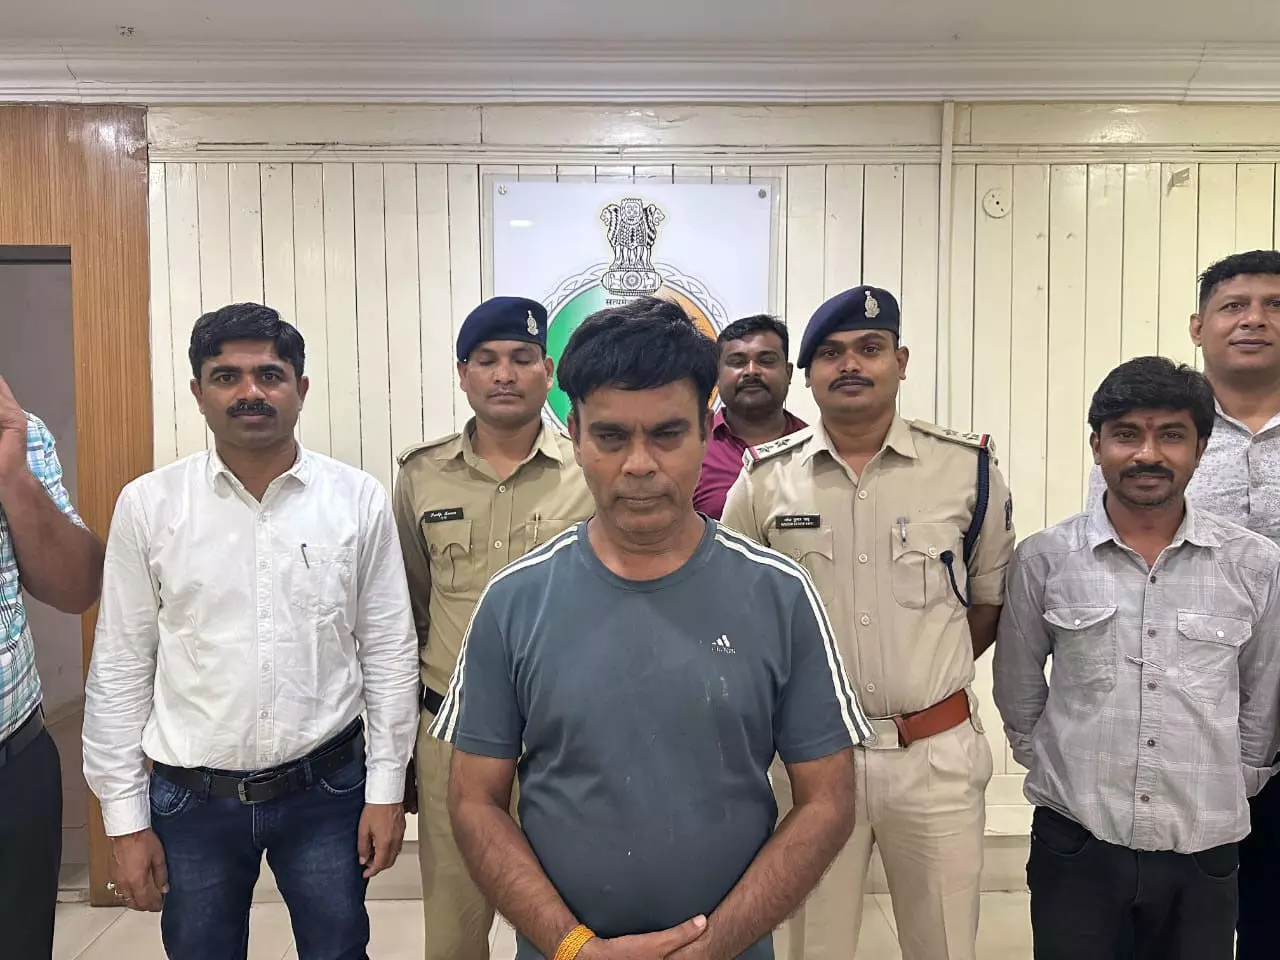 BREAKING: दिल्ली में बैठकर रायपुर के युवक को चूना लगाया, गिरफ्तार हुआ फ्रॉड